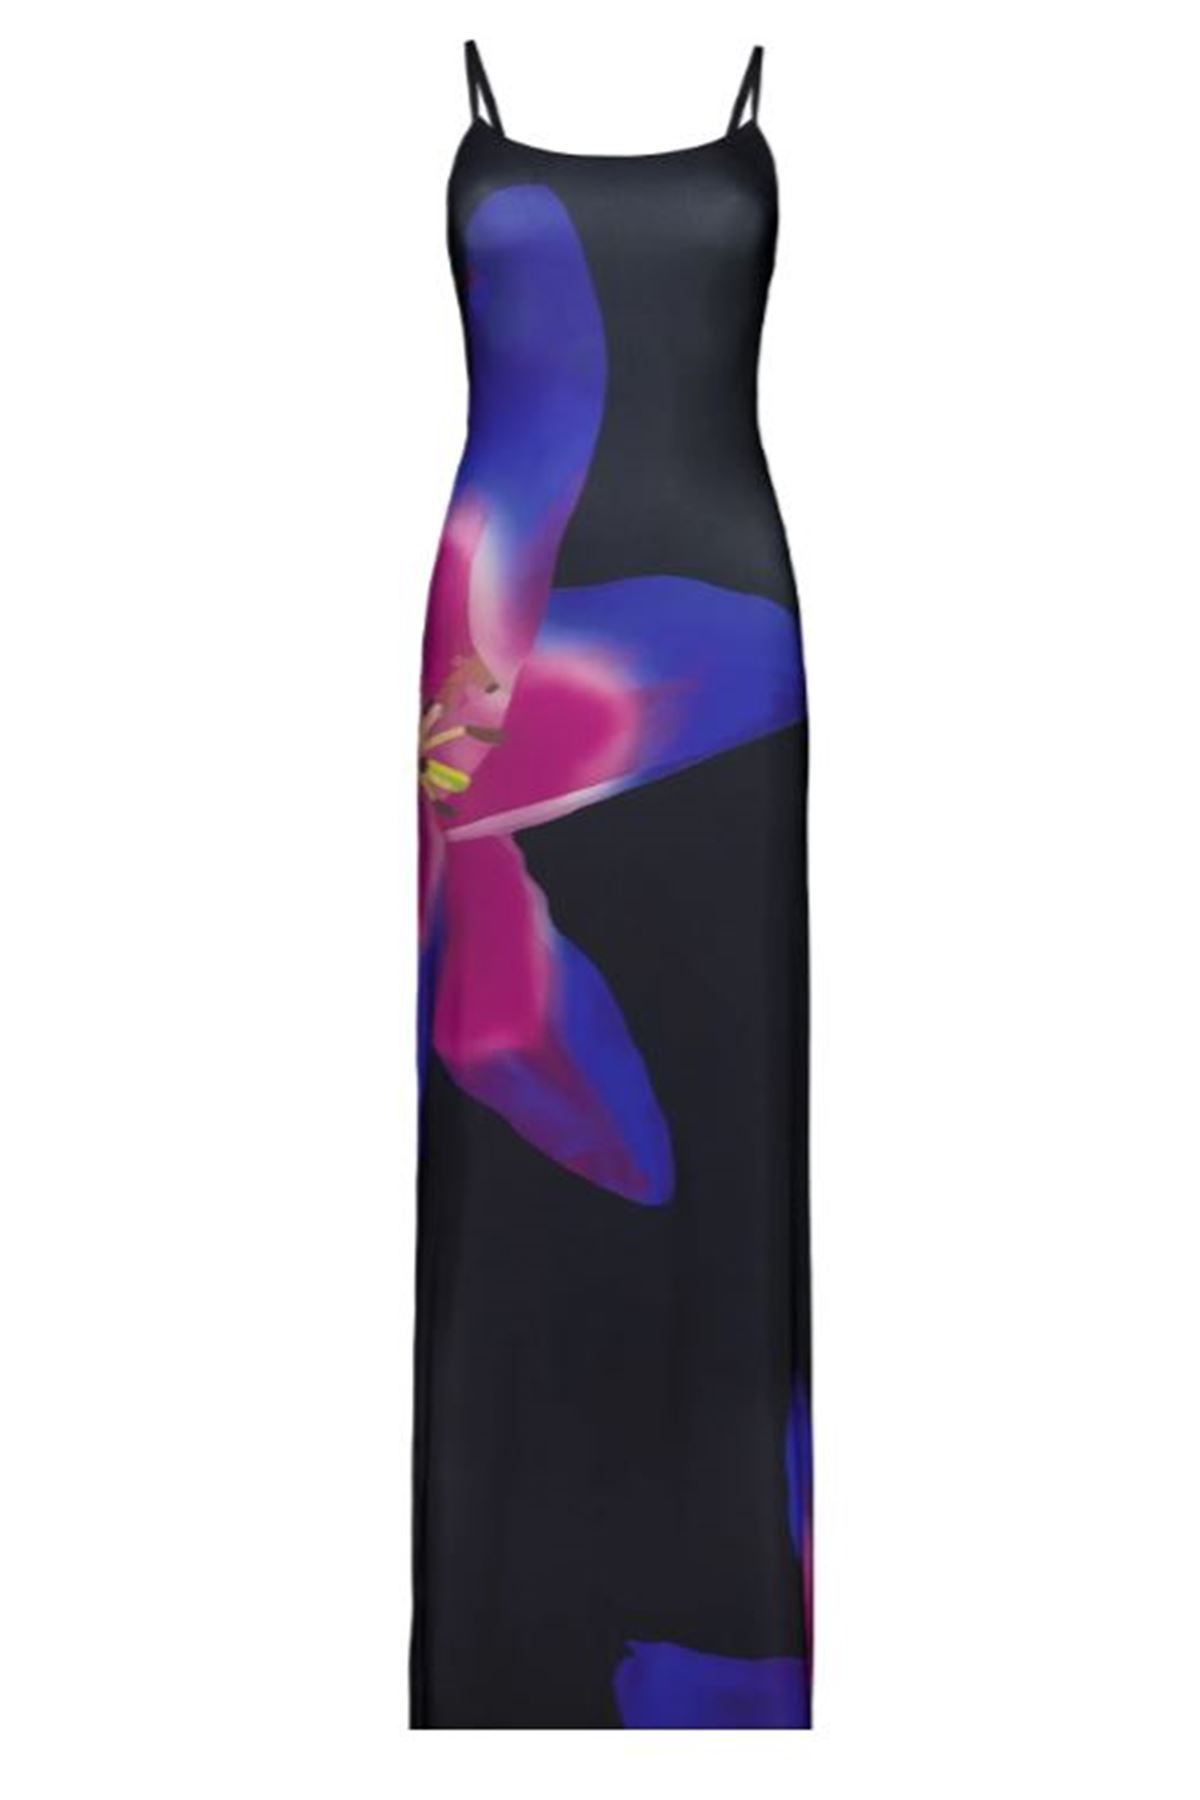 Desenli elbise midi boy yırtmaçlı elbise özel tasarım likralı çiçekli 10011